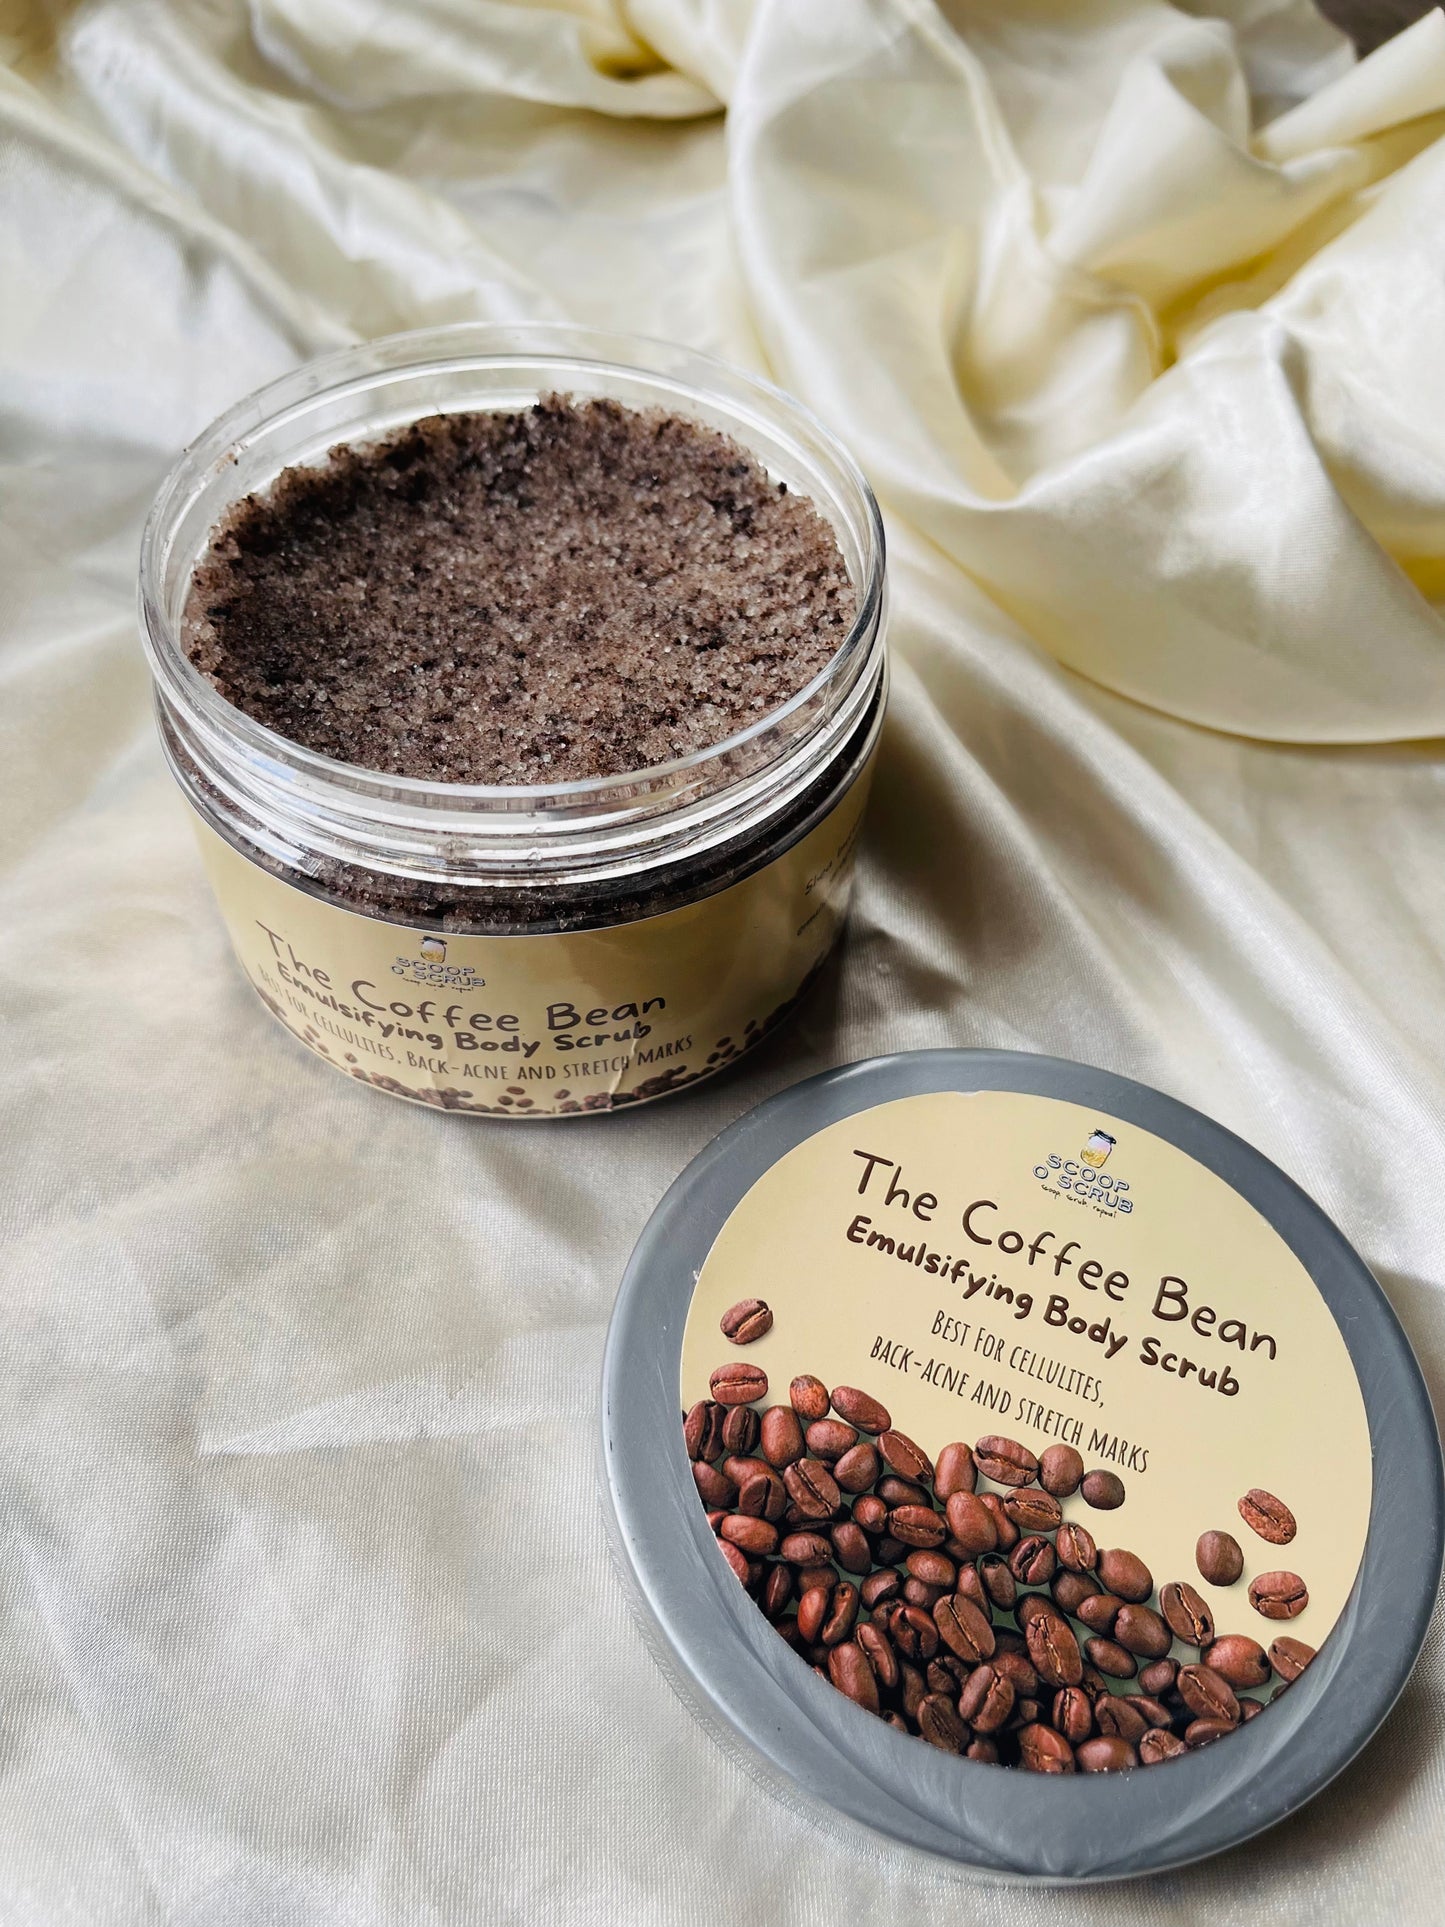 The Coffee Bean “emulsifying body scrub”